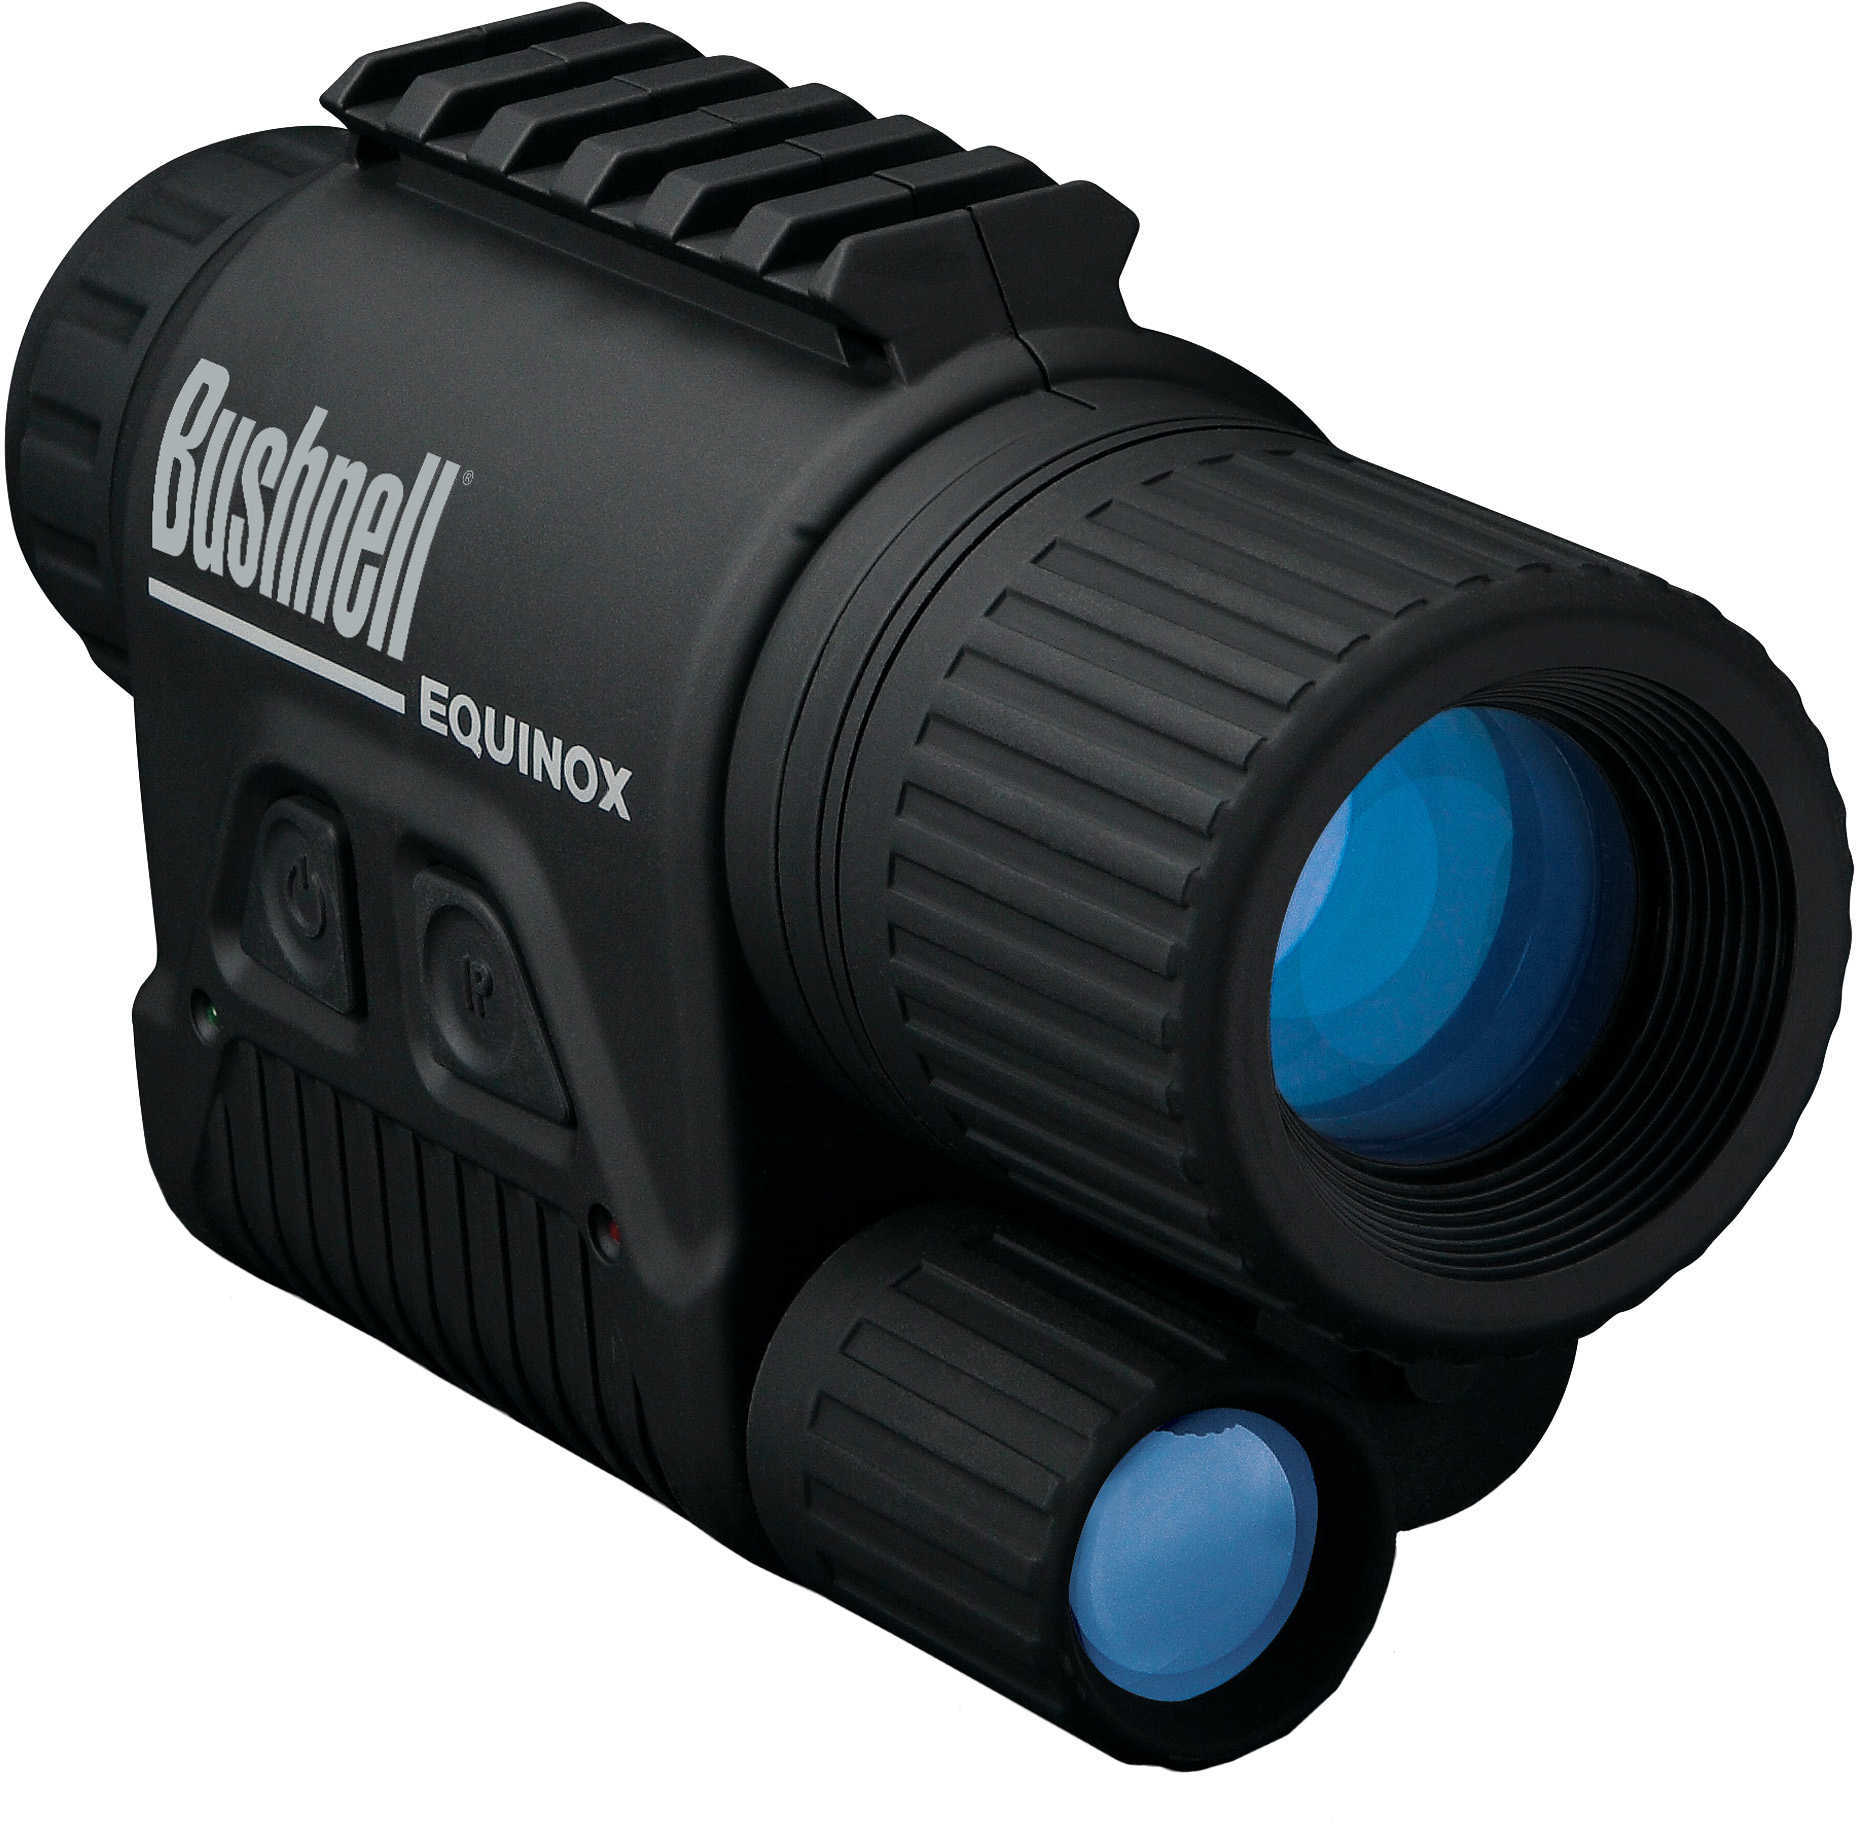 Bushnell Night Vision 2x28mm Equinox Gen 1 NV 260228